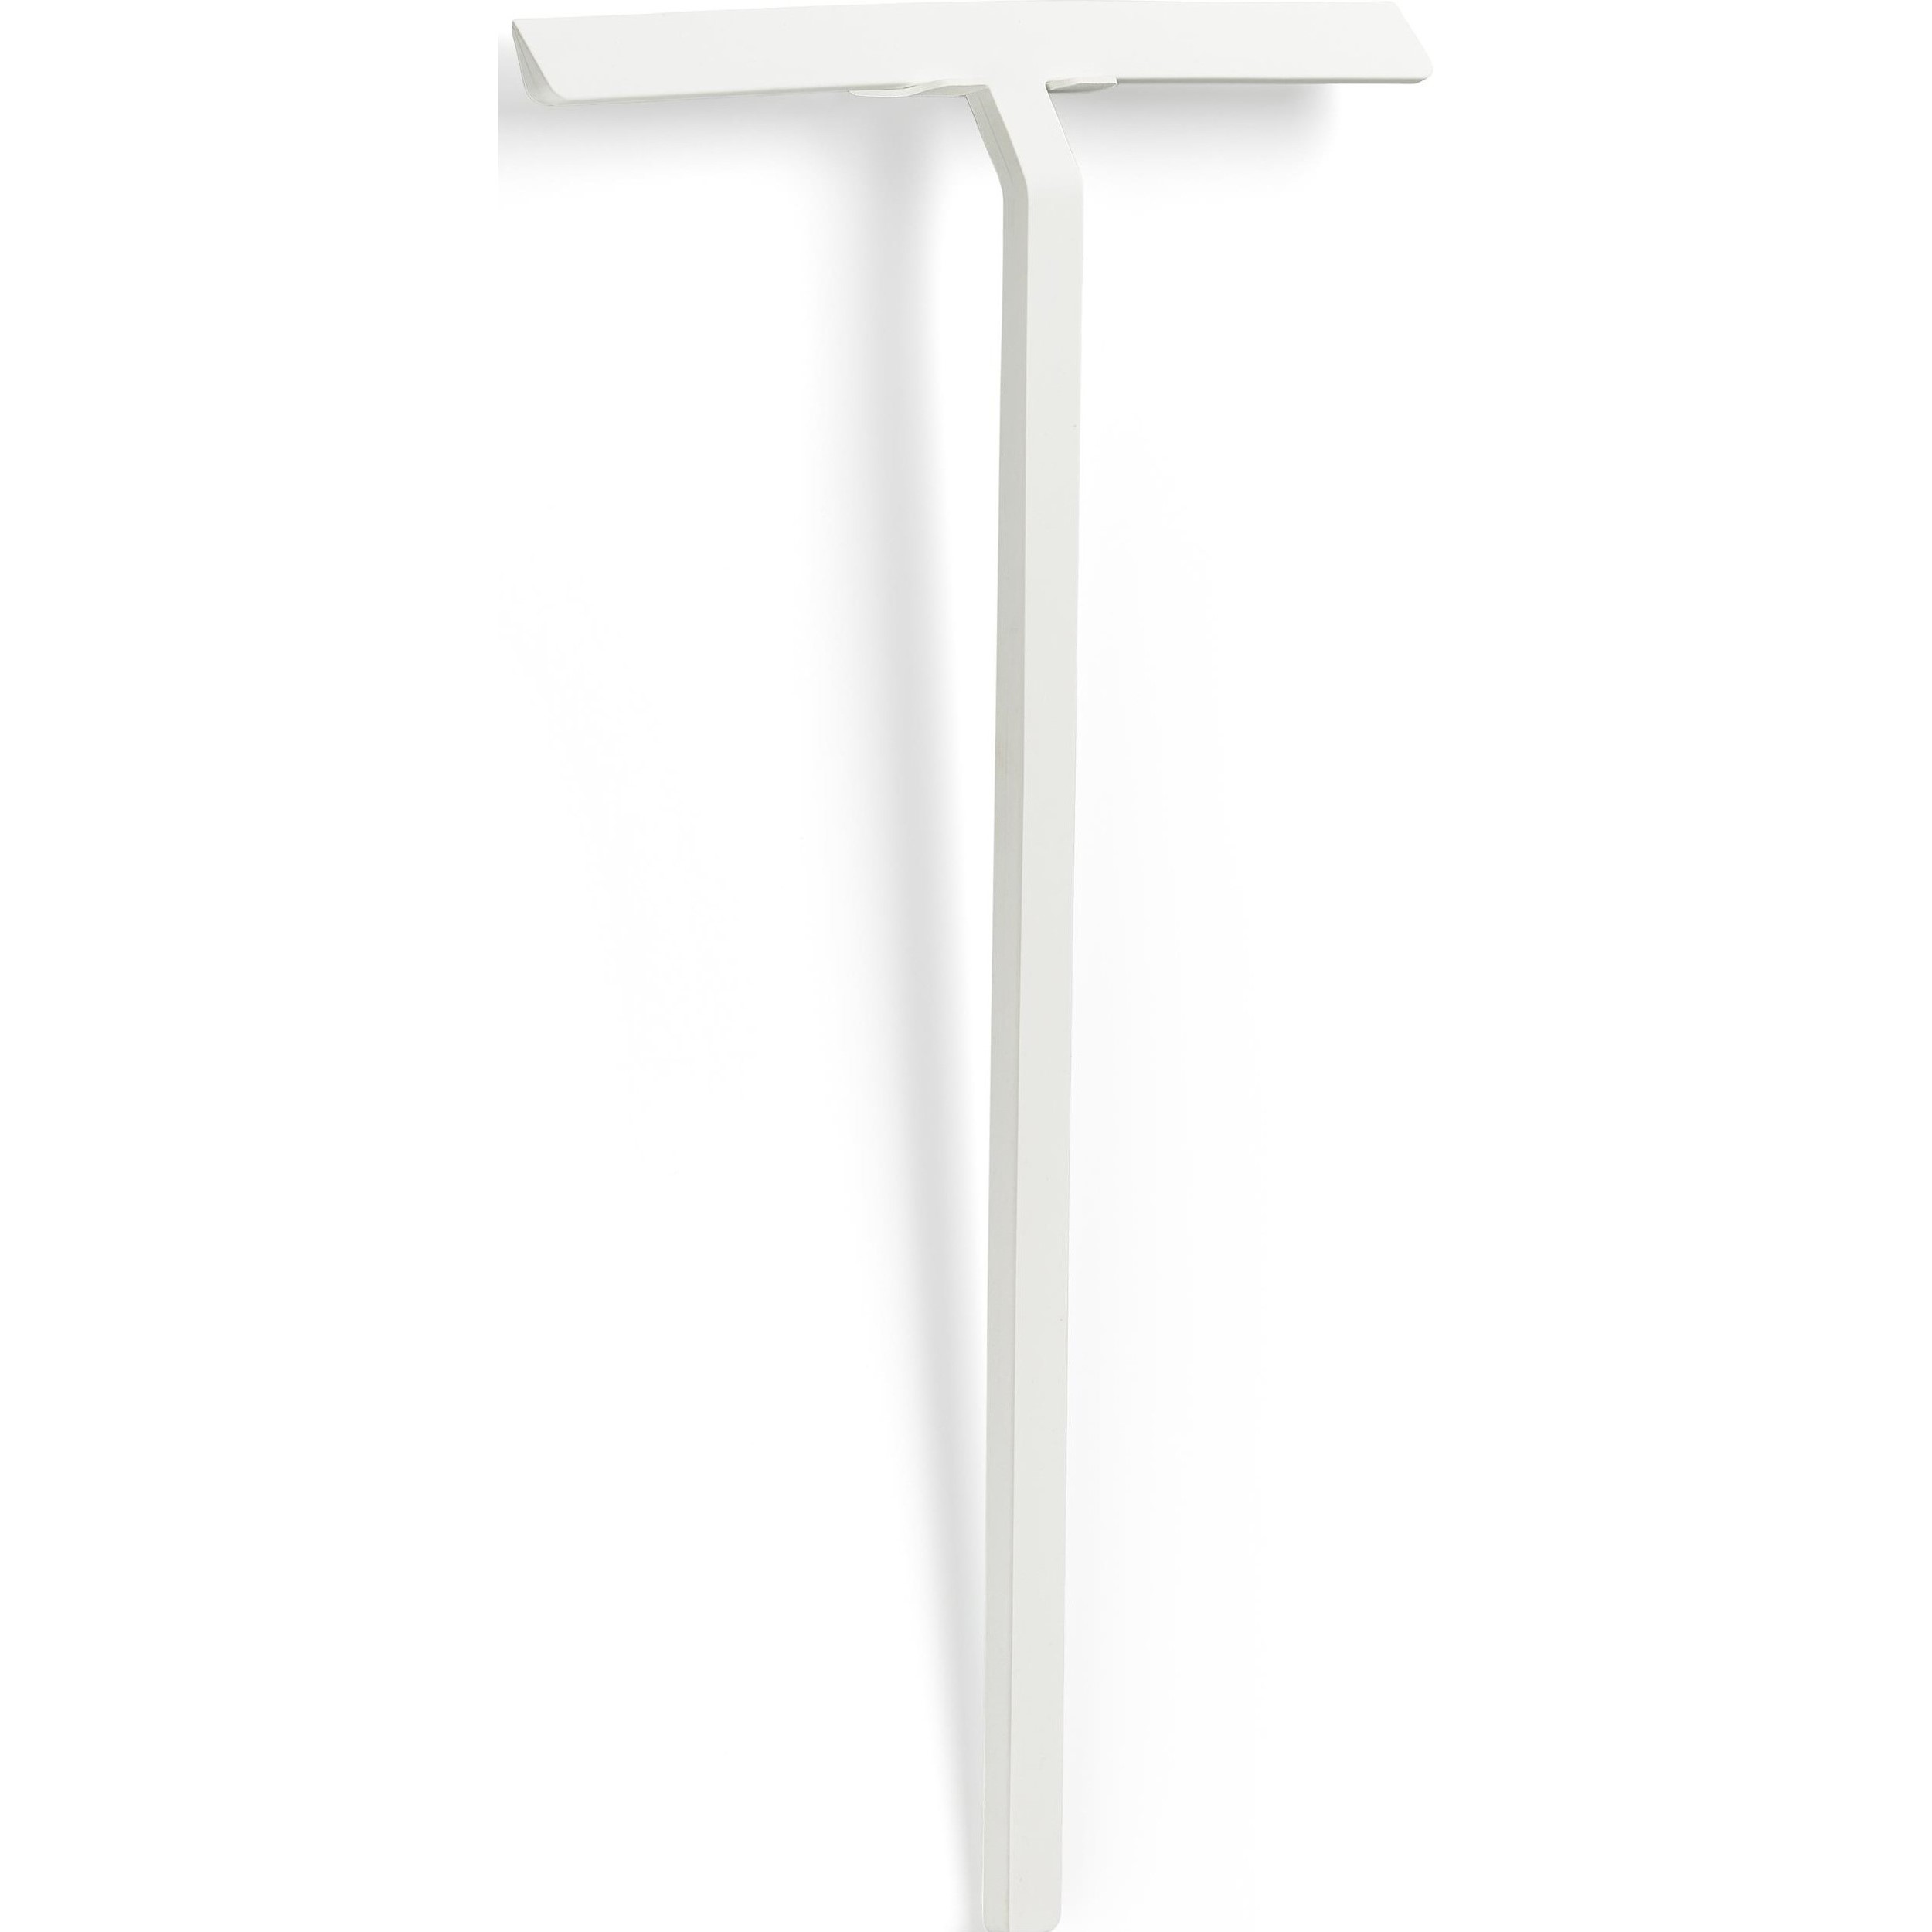 Sprchová stěrka RIM 30 cm, nástěnná, bílá, kov, Zone Denmark